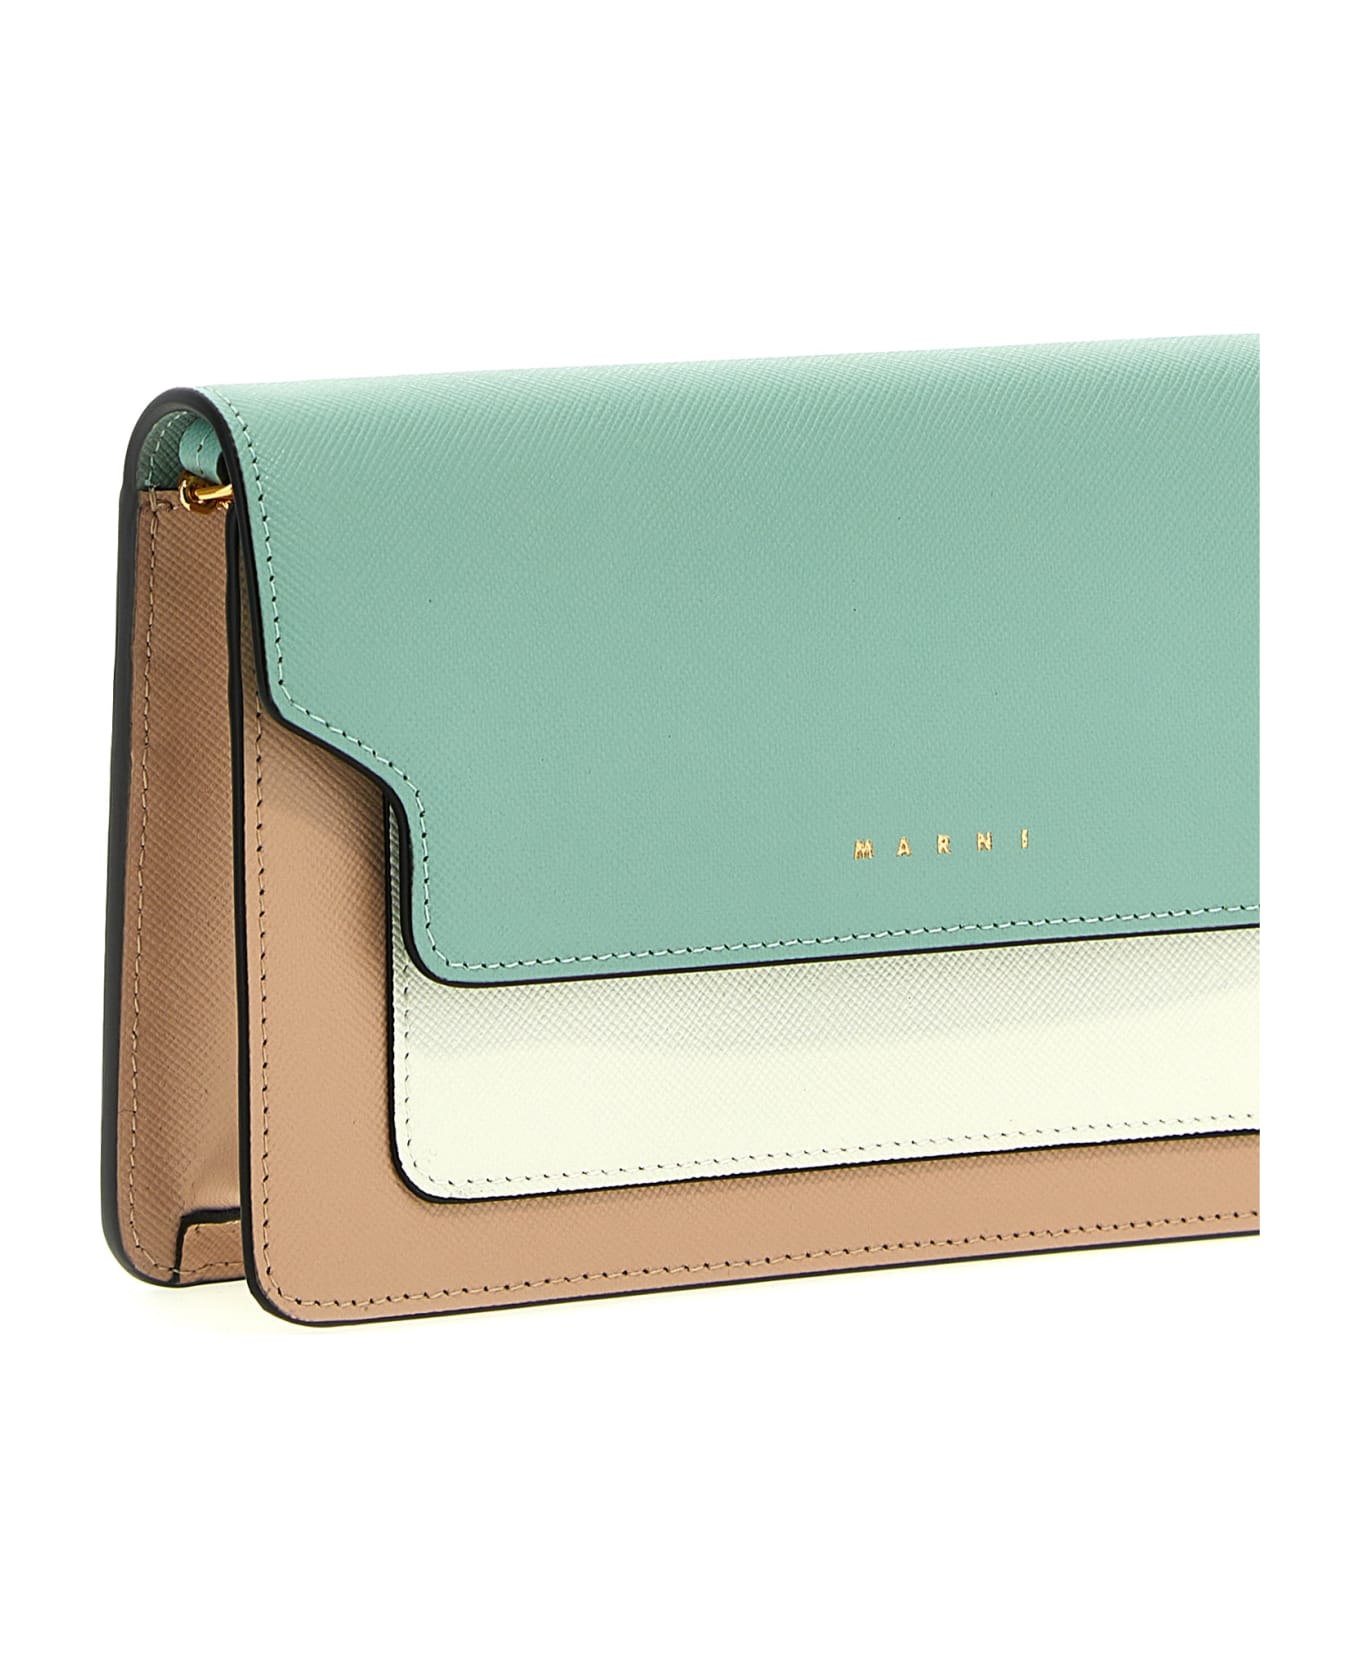 Marni Wallet With Shoulder Strap - Multicolor